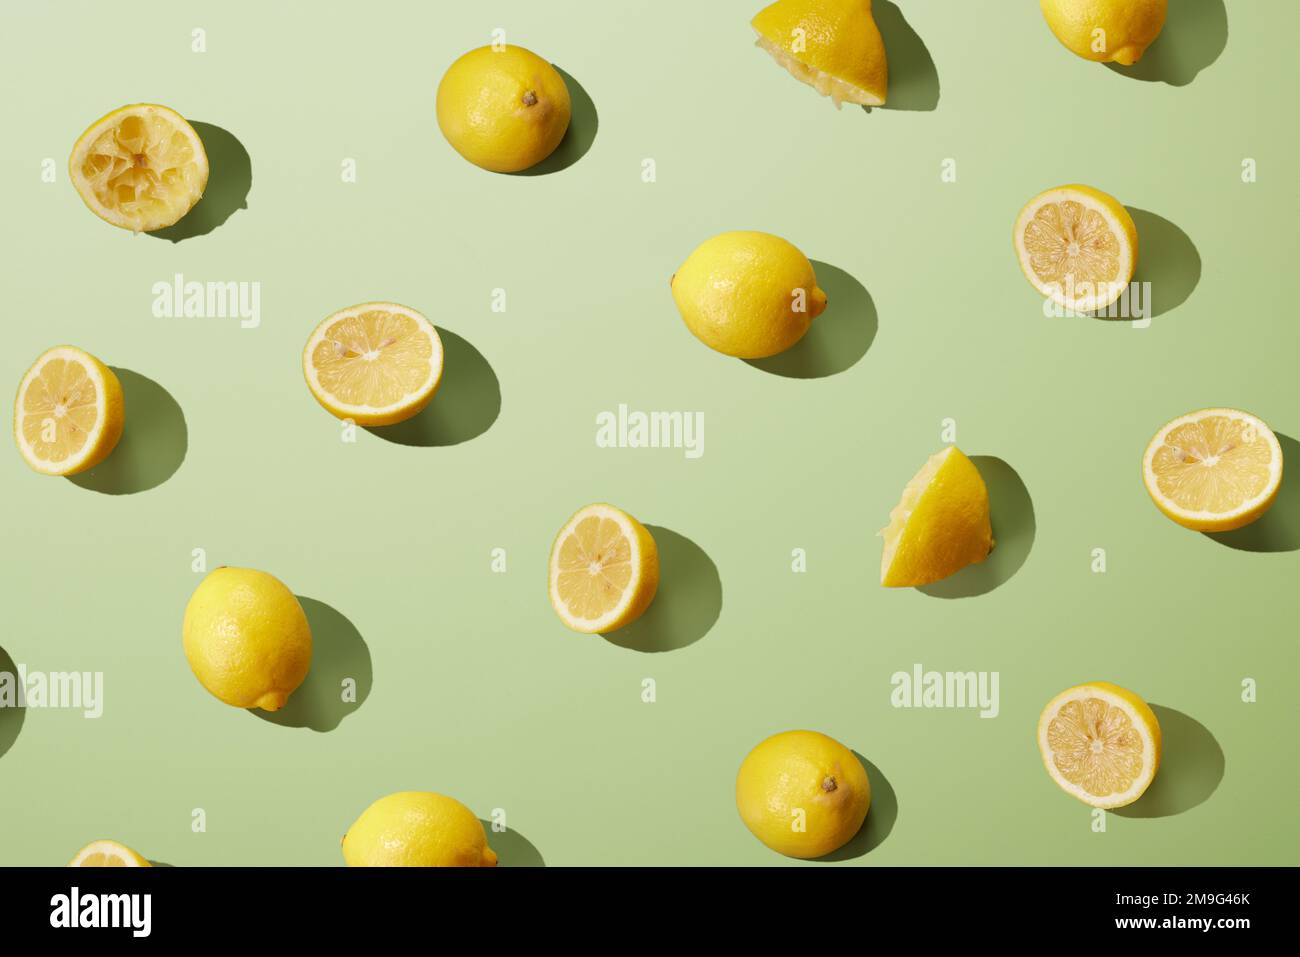 Dall'alto di limoni freschi maturi tagliati a metà e interi gialli disposti su una superficie verde come sfondo astratto Foto Stock